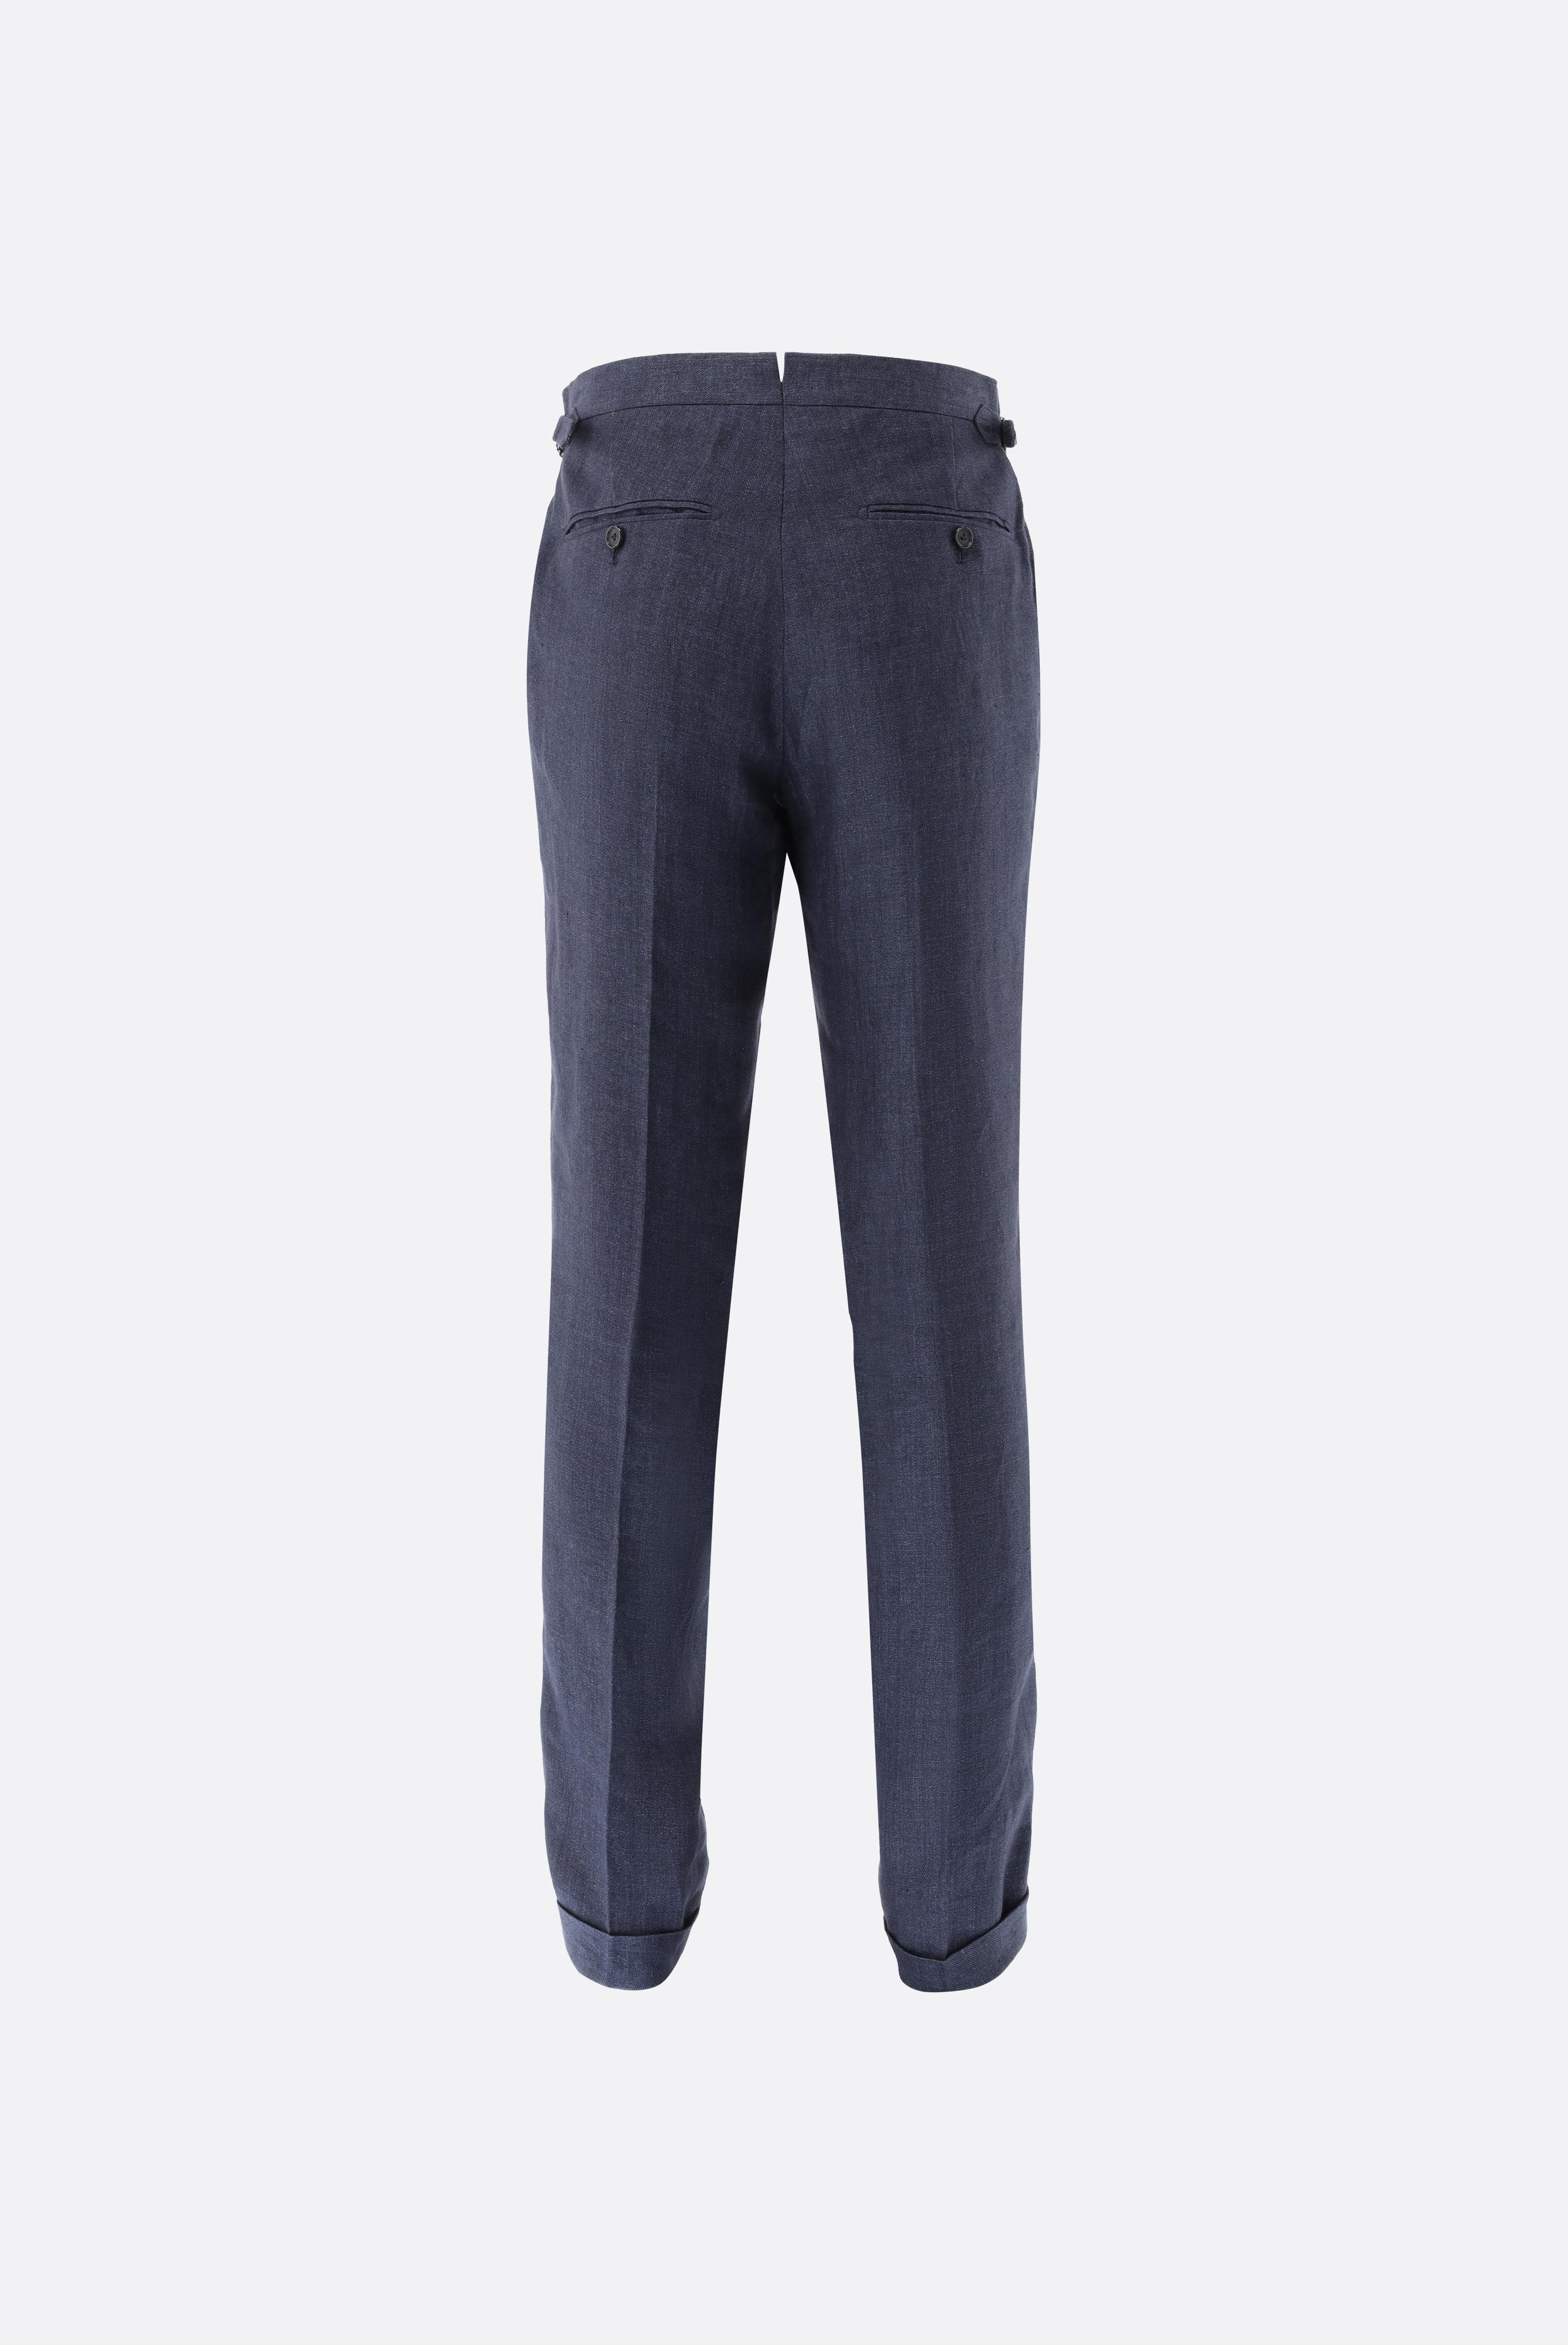 Jeans & Hosen+Hose aus Leinen mit Bundfalte+20.7814.15.H55027.790.46